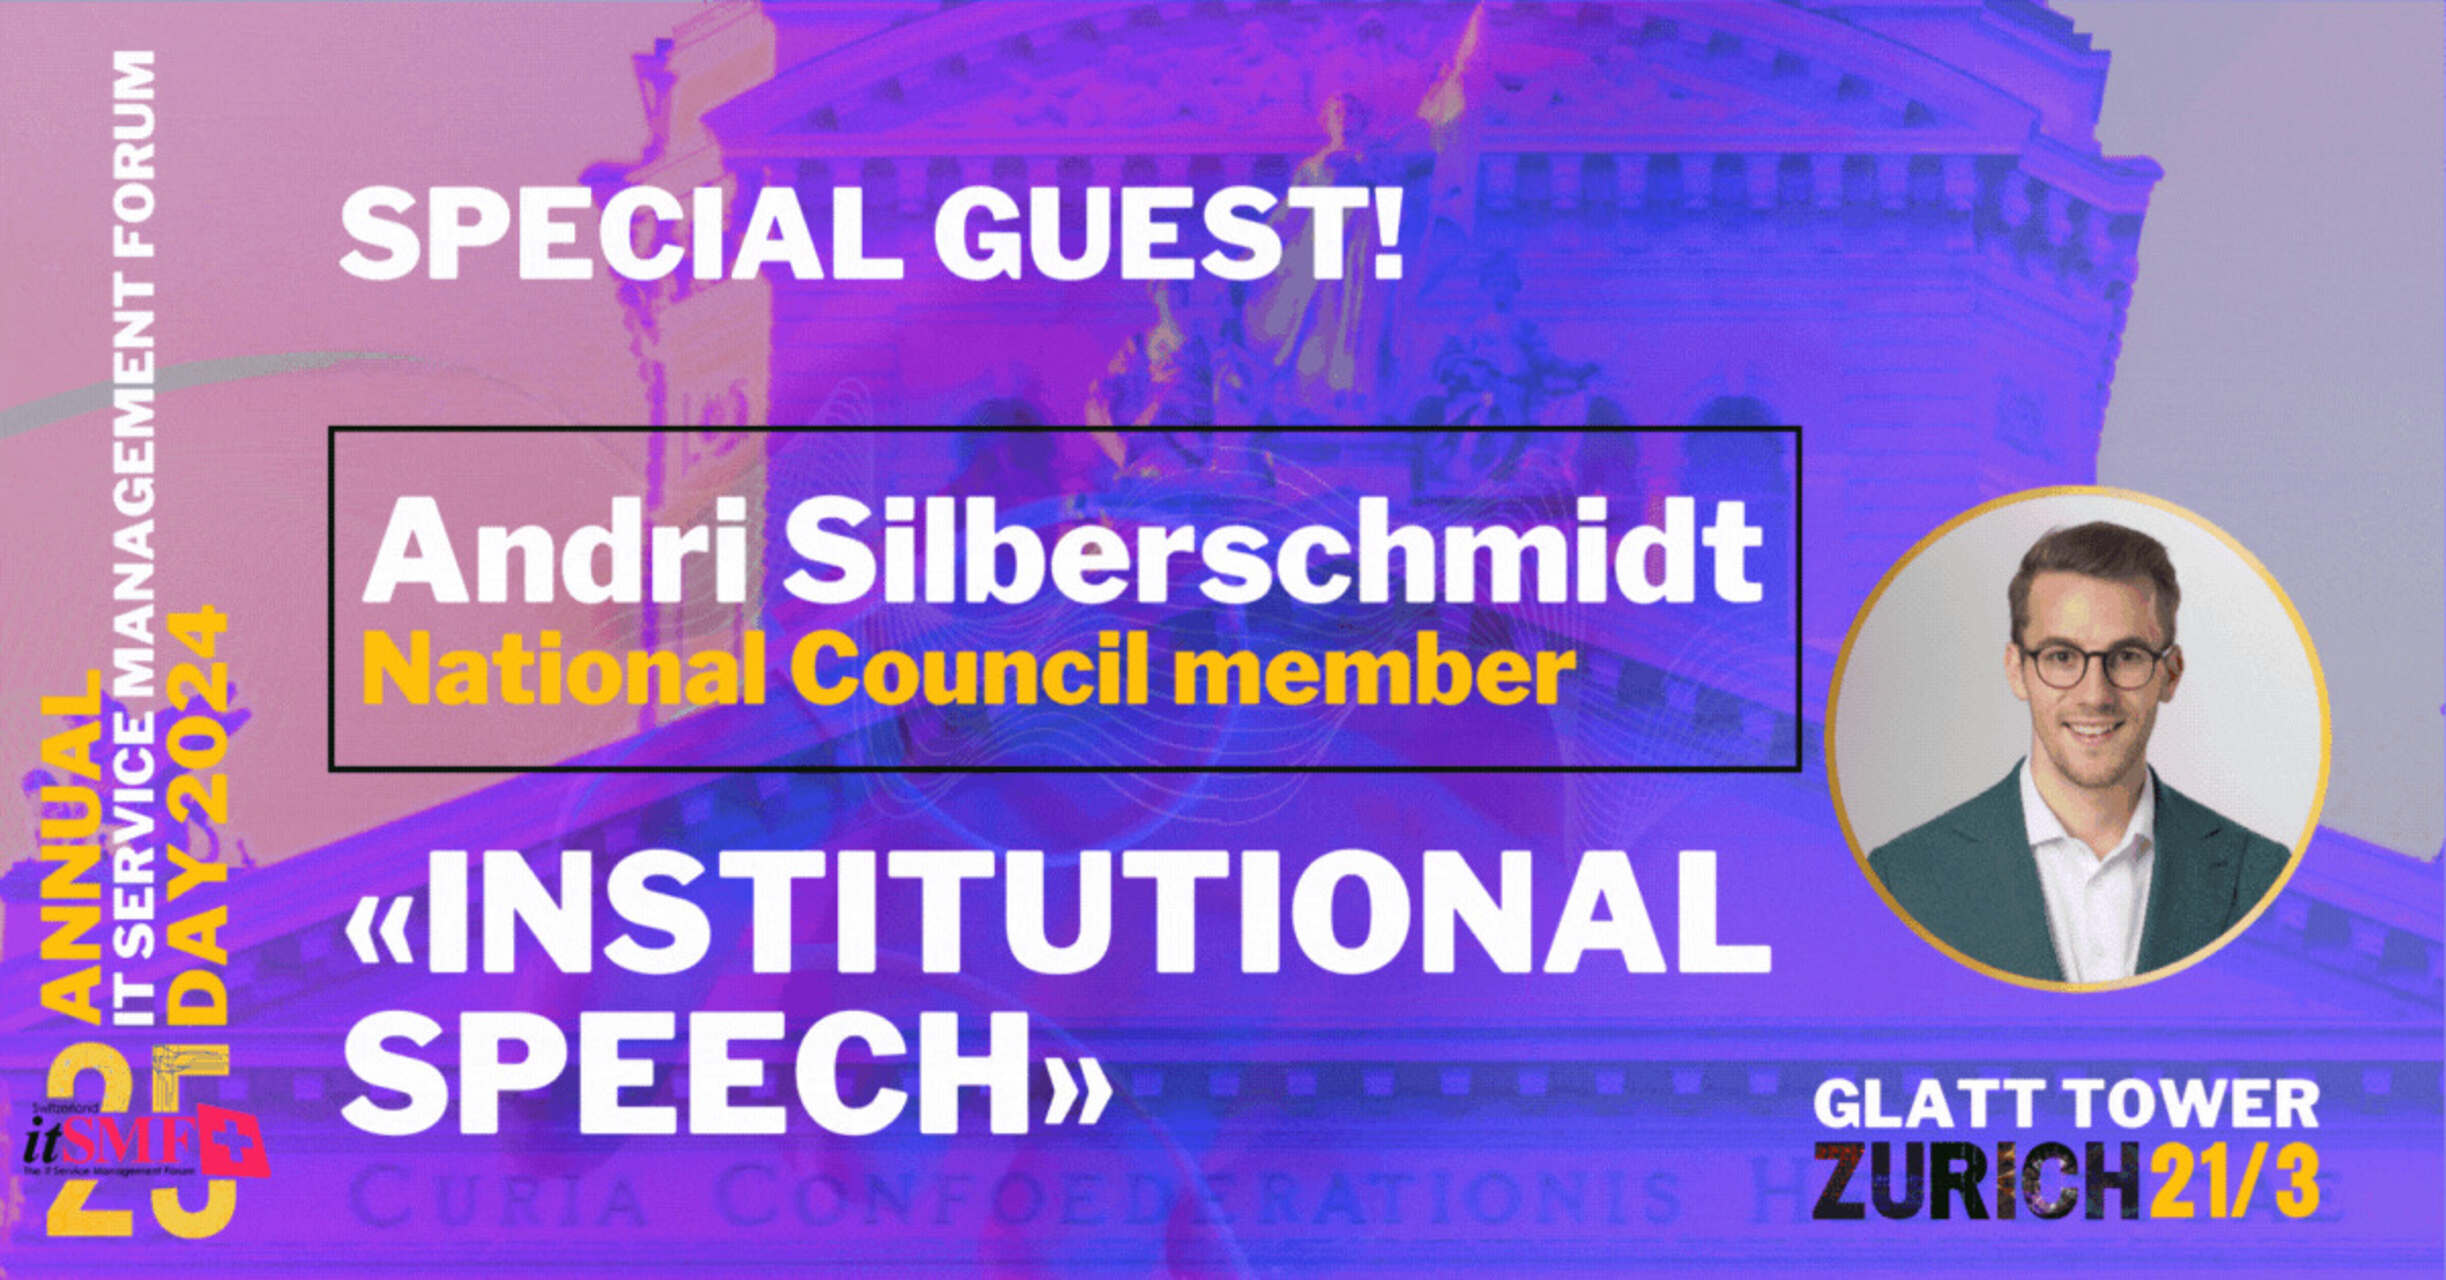 服務管理：企業家兼瑞士國民議會成員 Andri Silberschmidt 將於 21 年 2024 月 XNUMX 日在蘇黎世-瓦利塞倫舉行的年度 itSMF 活動上發表機構演講